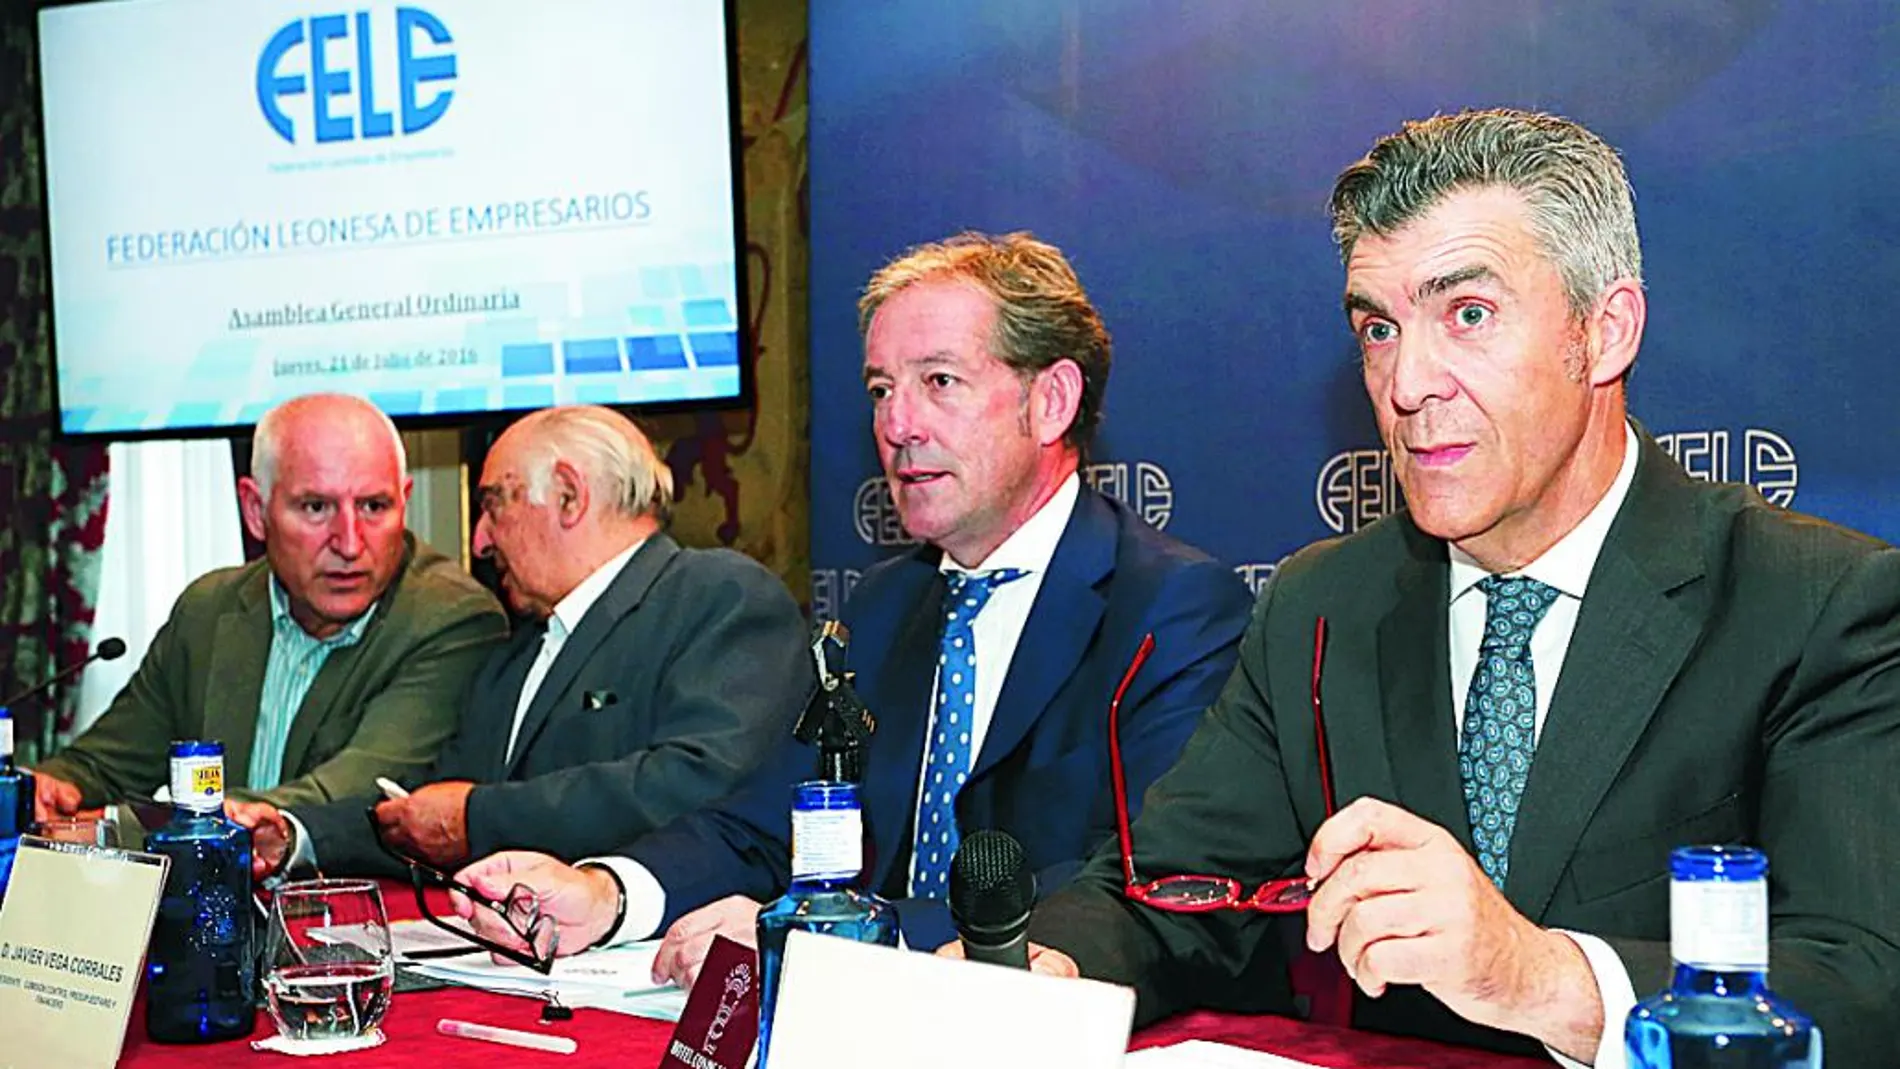 Asamblea general de la Federación Leonesa de Empresarios (Fele) presidida por Javier Cepedano